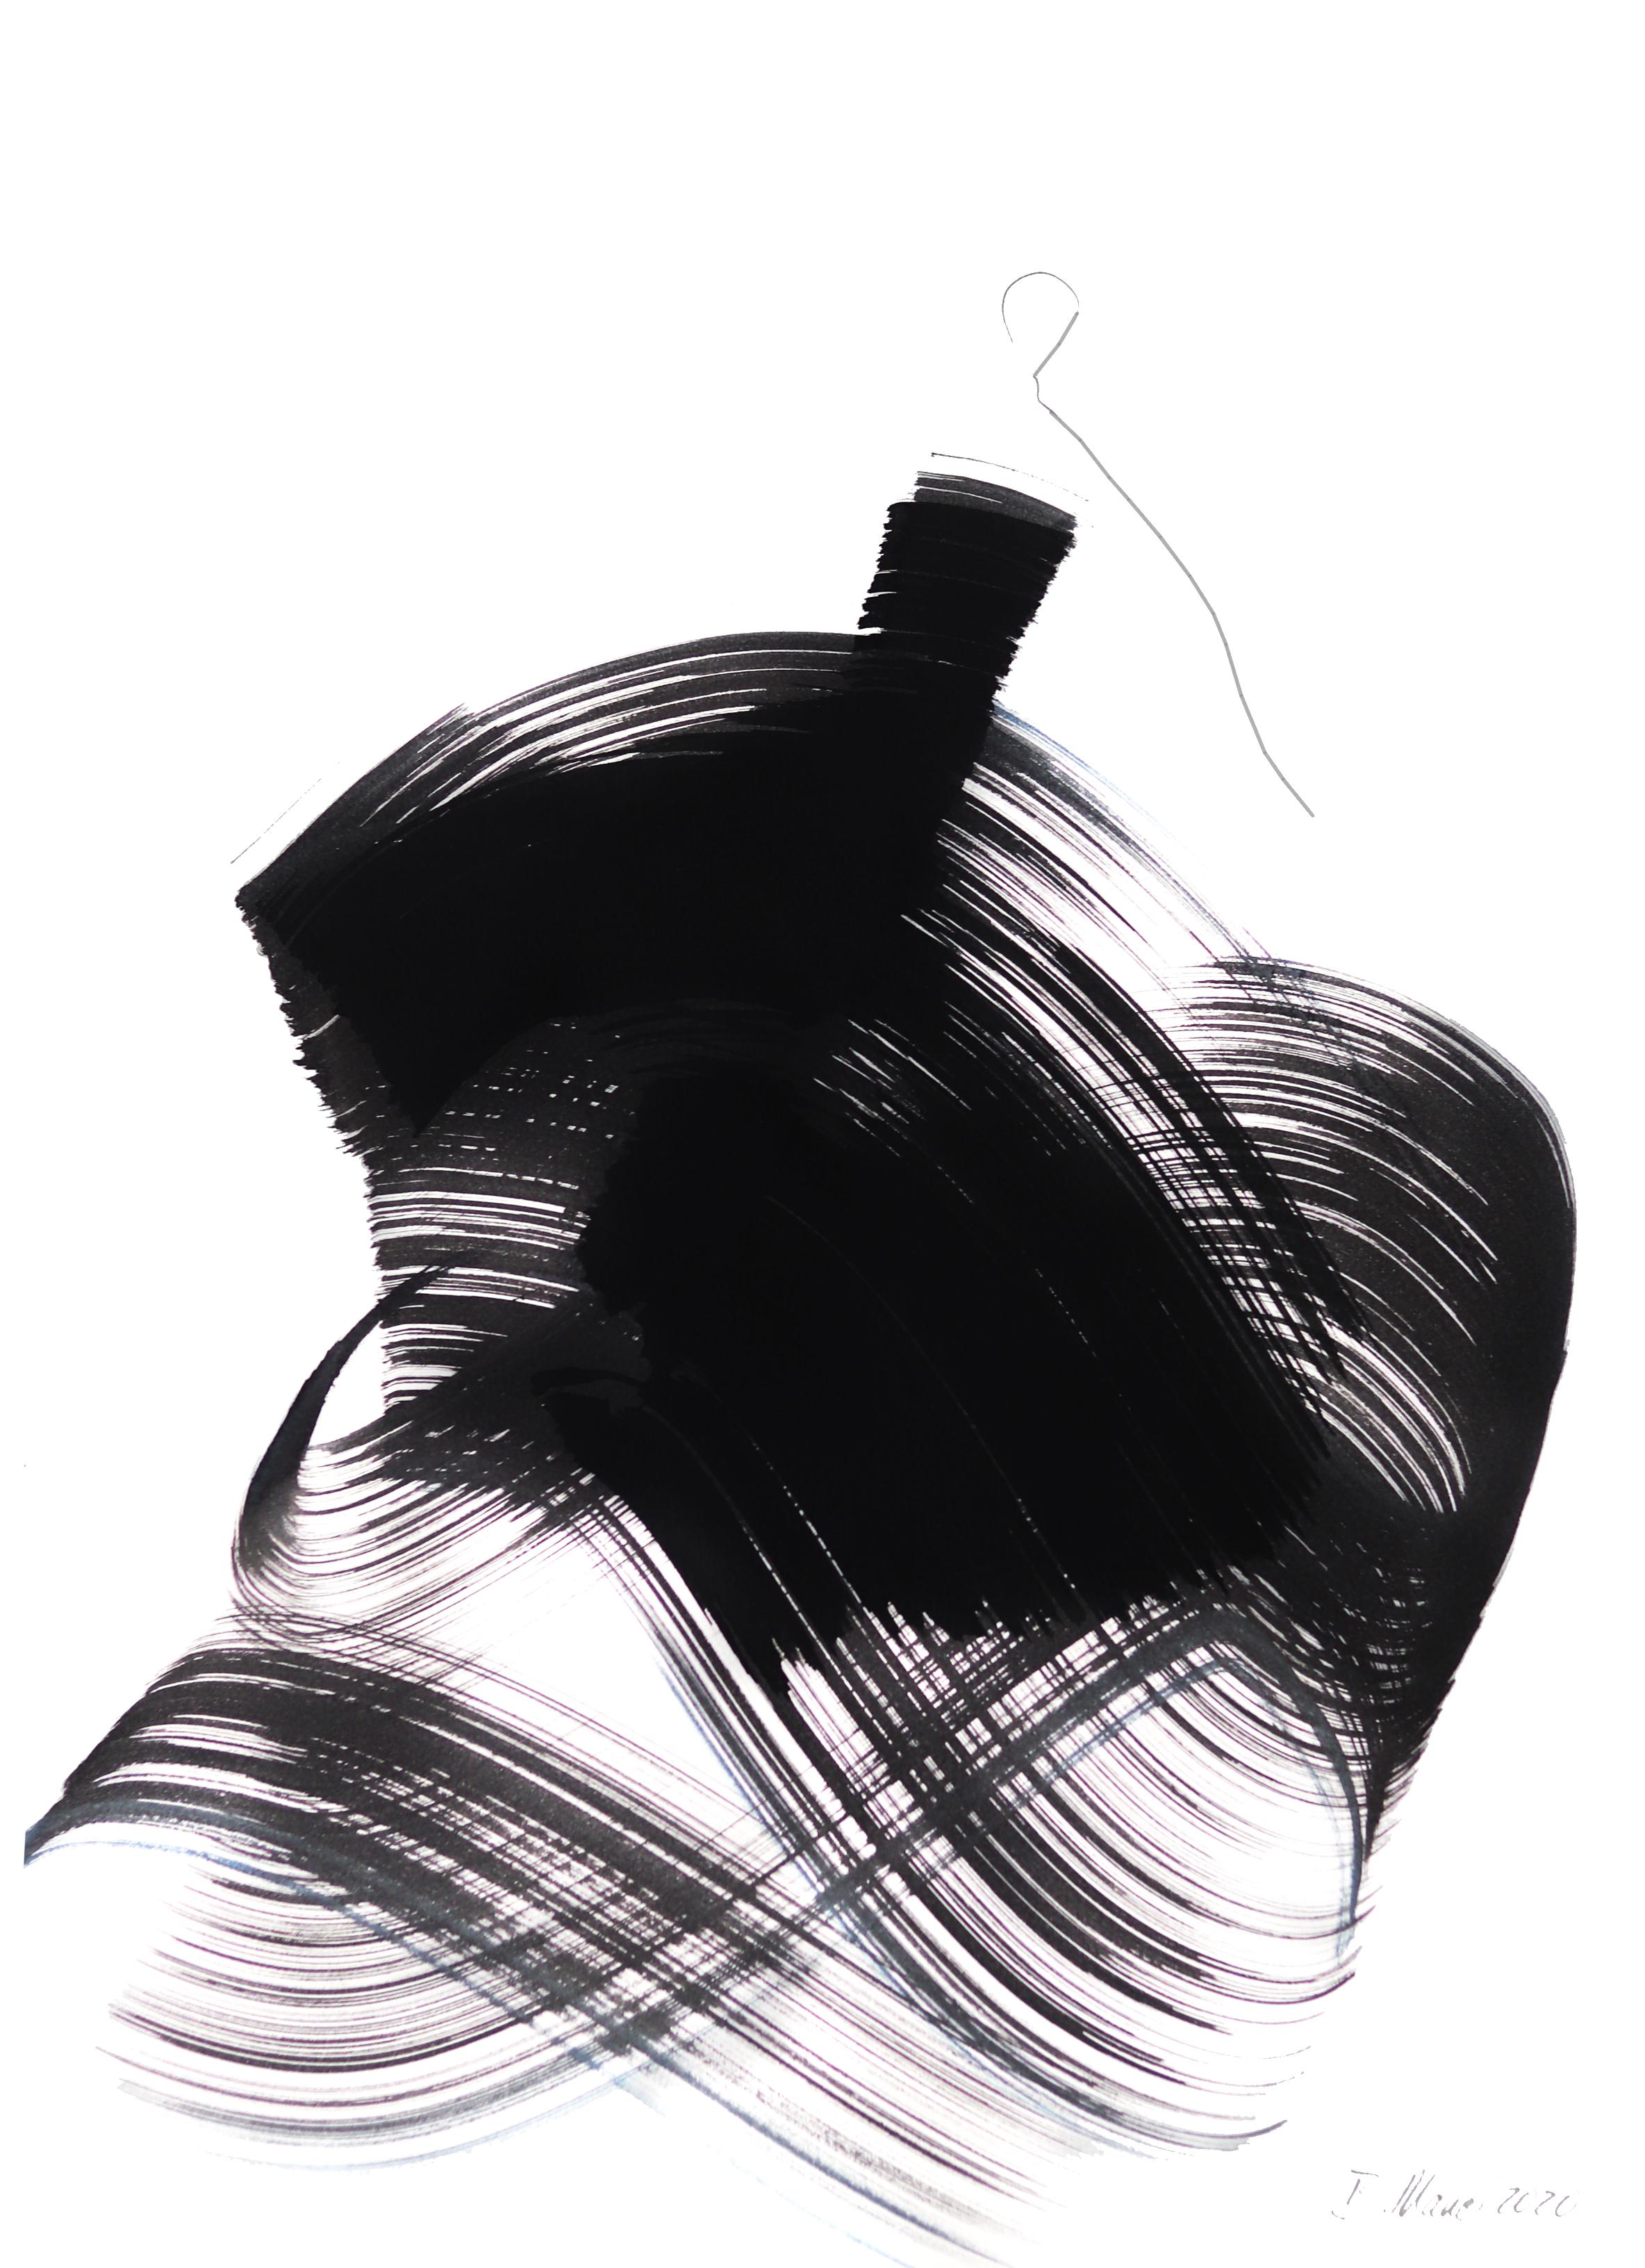 The Black Dress 35 - Mixed Media Art by Bettina Mauel